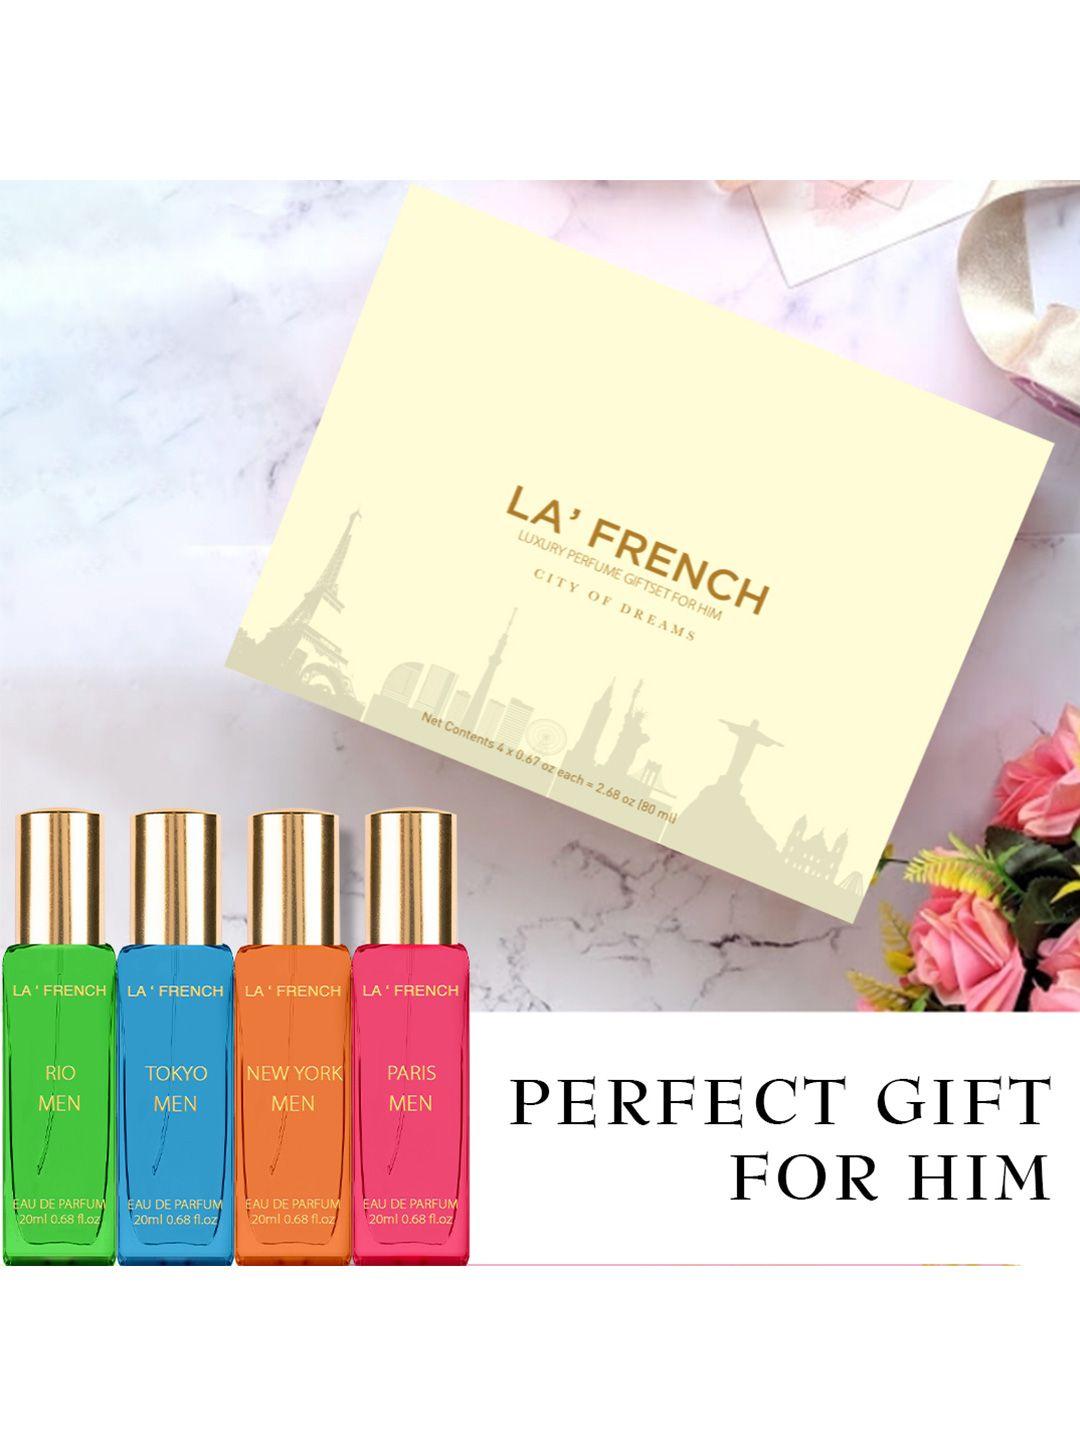 la french men city of dreams luxury eau de parfum gift set - 80 ml